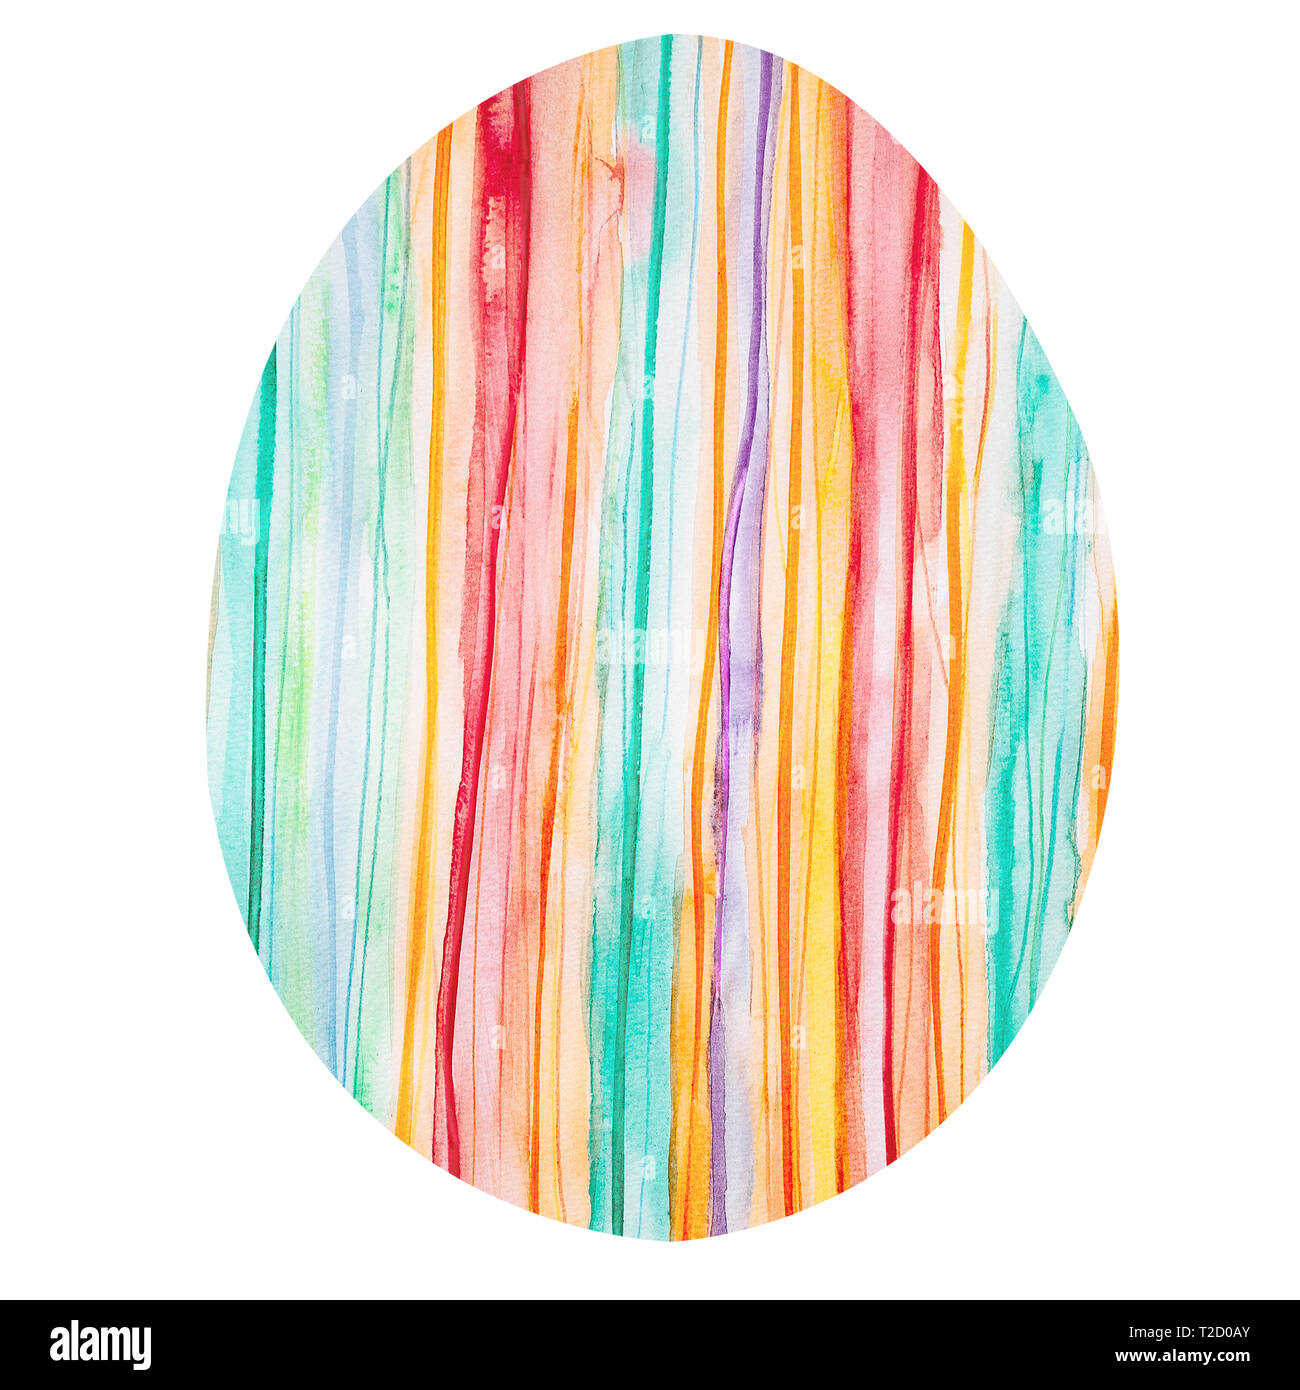 Uovo di Pasqua con una colorata verticale pattern a strisce. Vacanze di primavera uovo dipinte di rosso, arancione, giallo, verde, blu e viola strisce. Acquarello Foto Stock